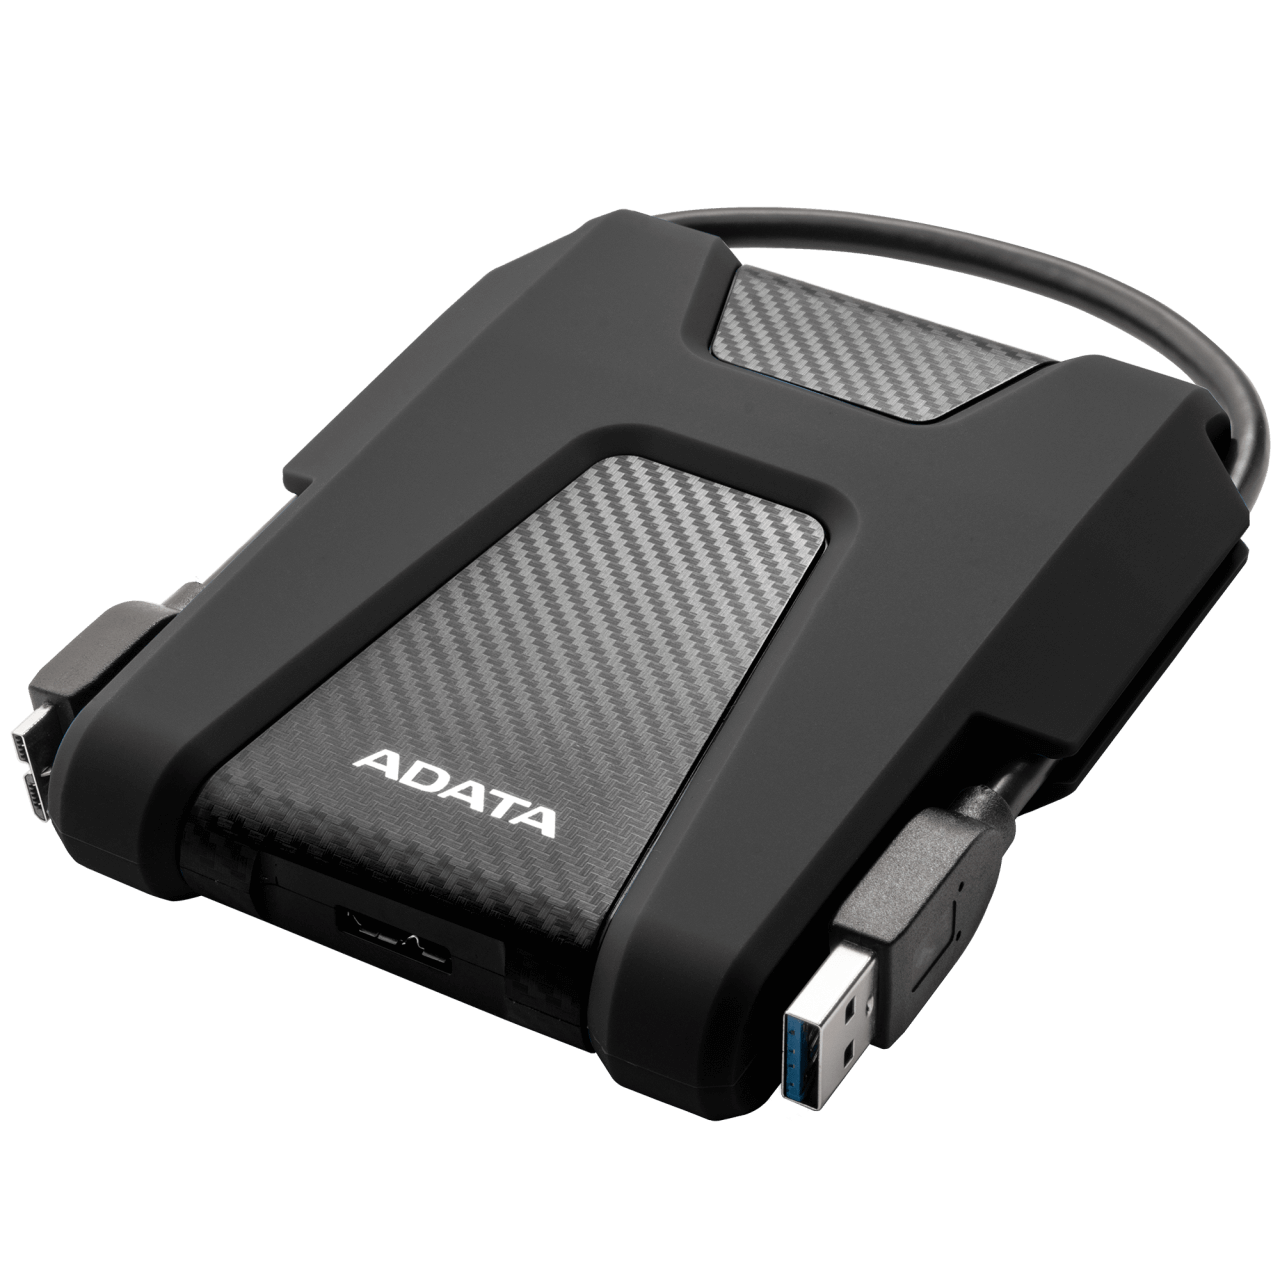 ADATA HD680 External Hard Drive 1TB